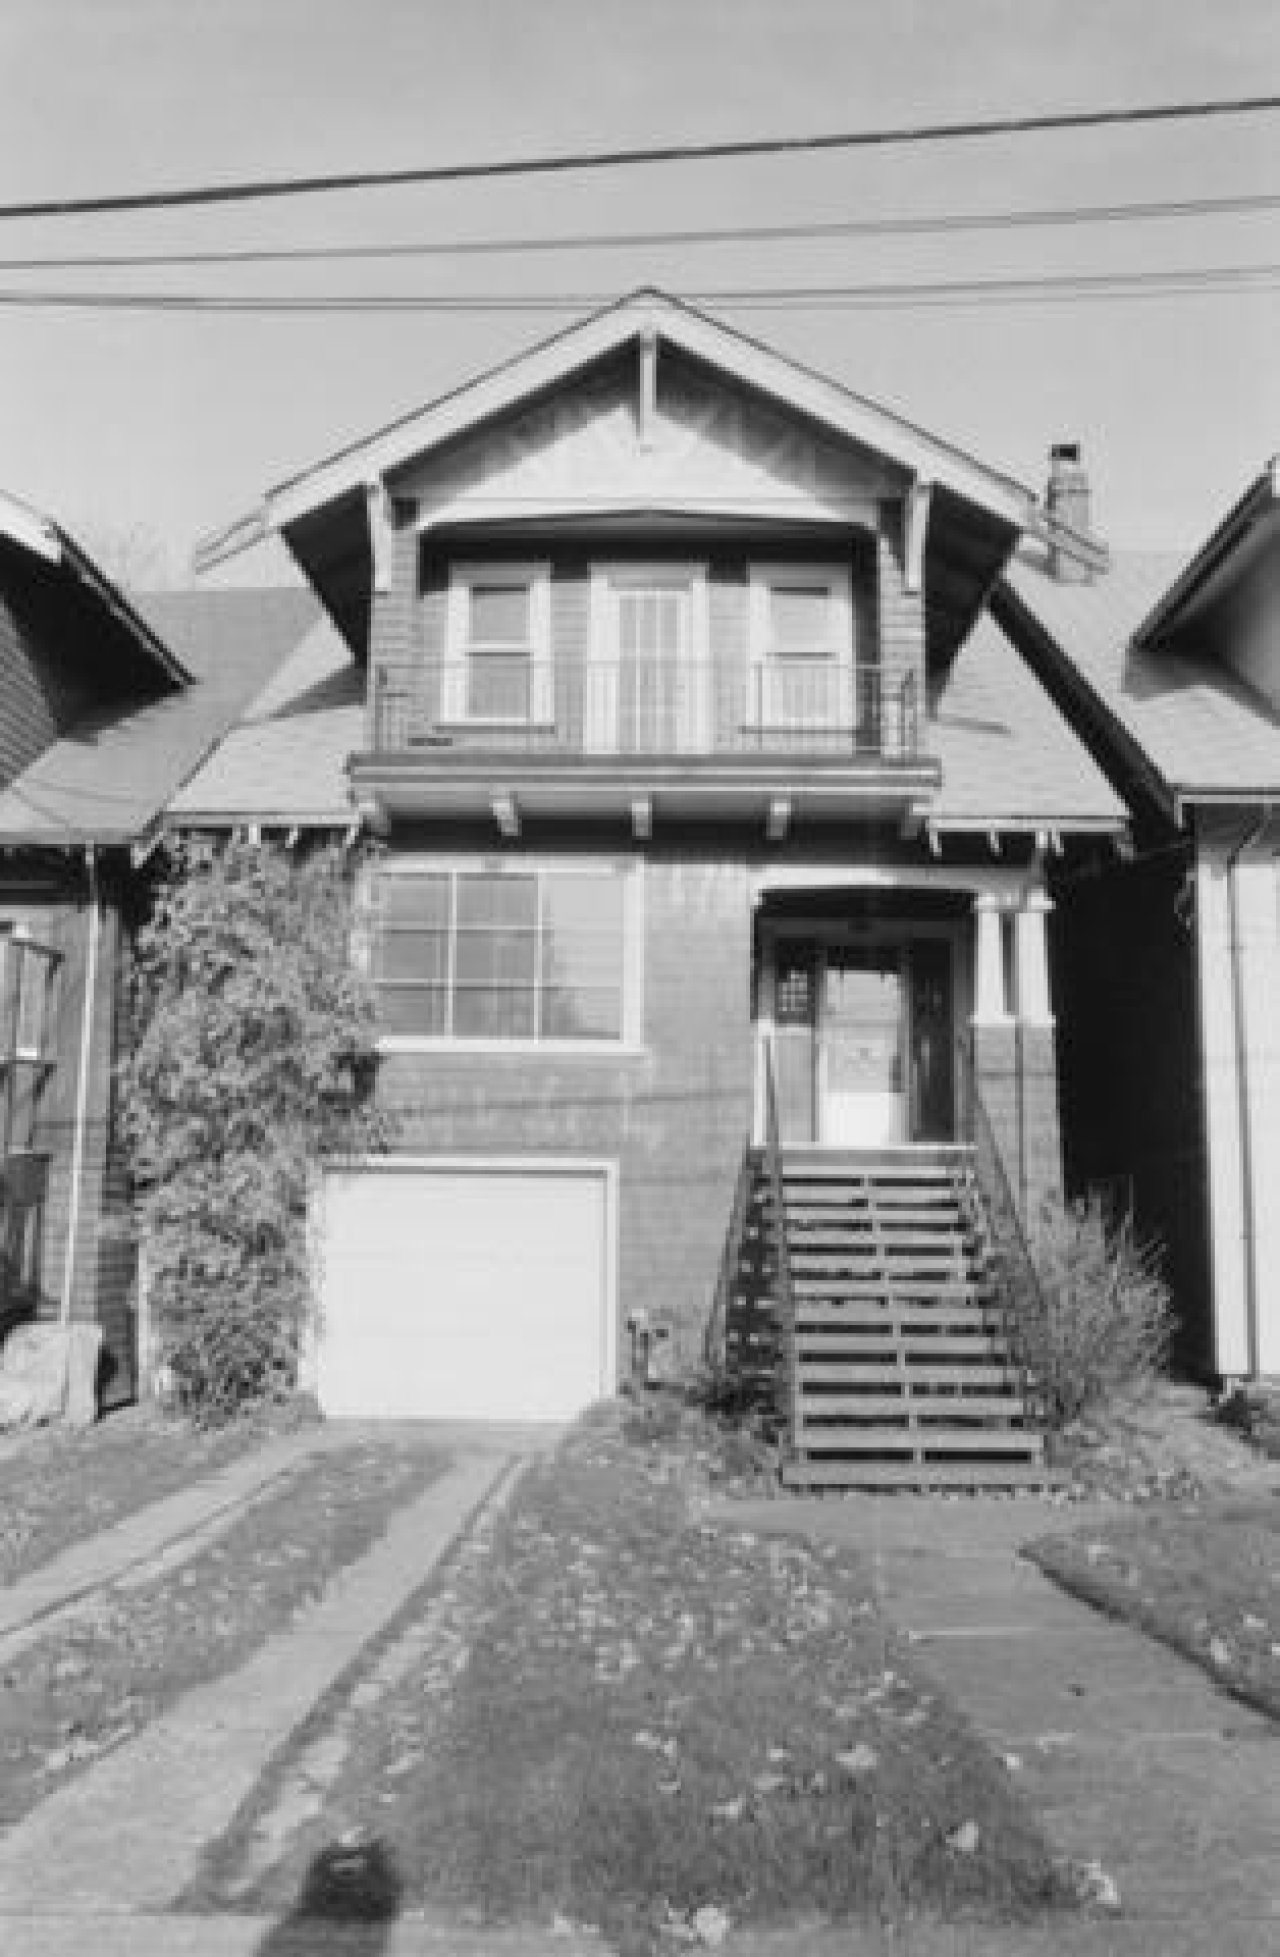 2745 West 3rd Avenue c. 1985
Source: City of Vancouver Archives Item : CVA 790-1452 - 2745 West 3rd Avenue